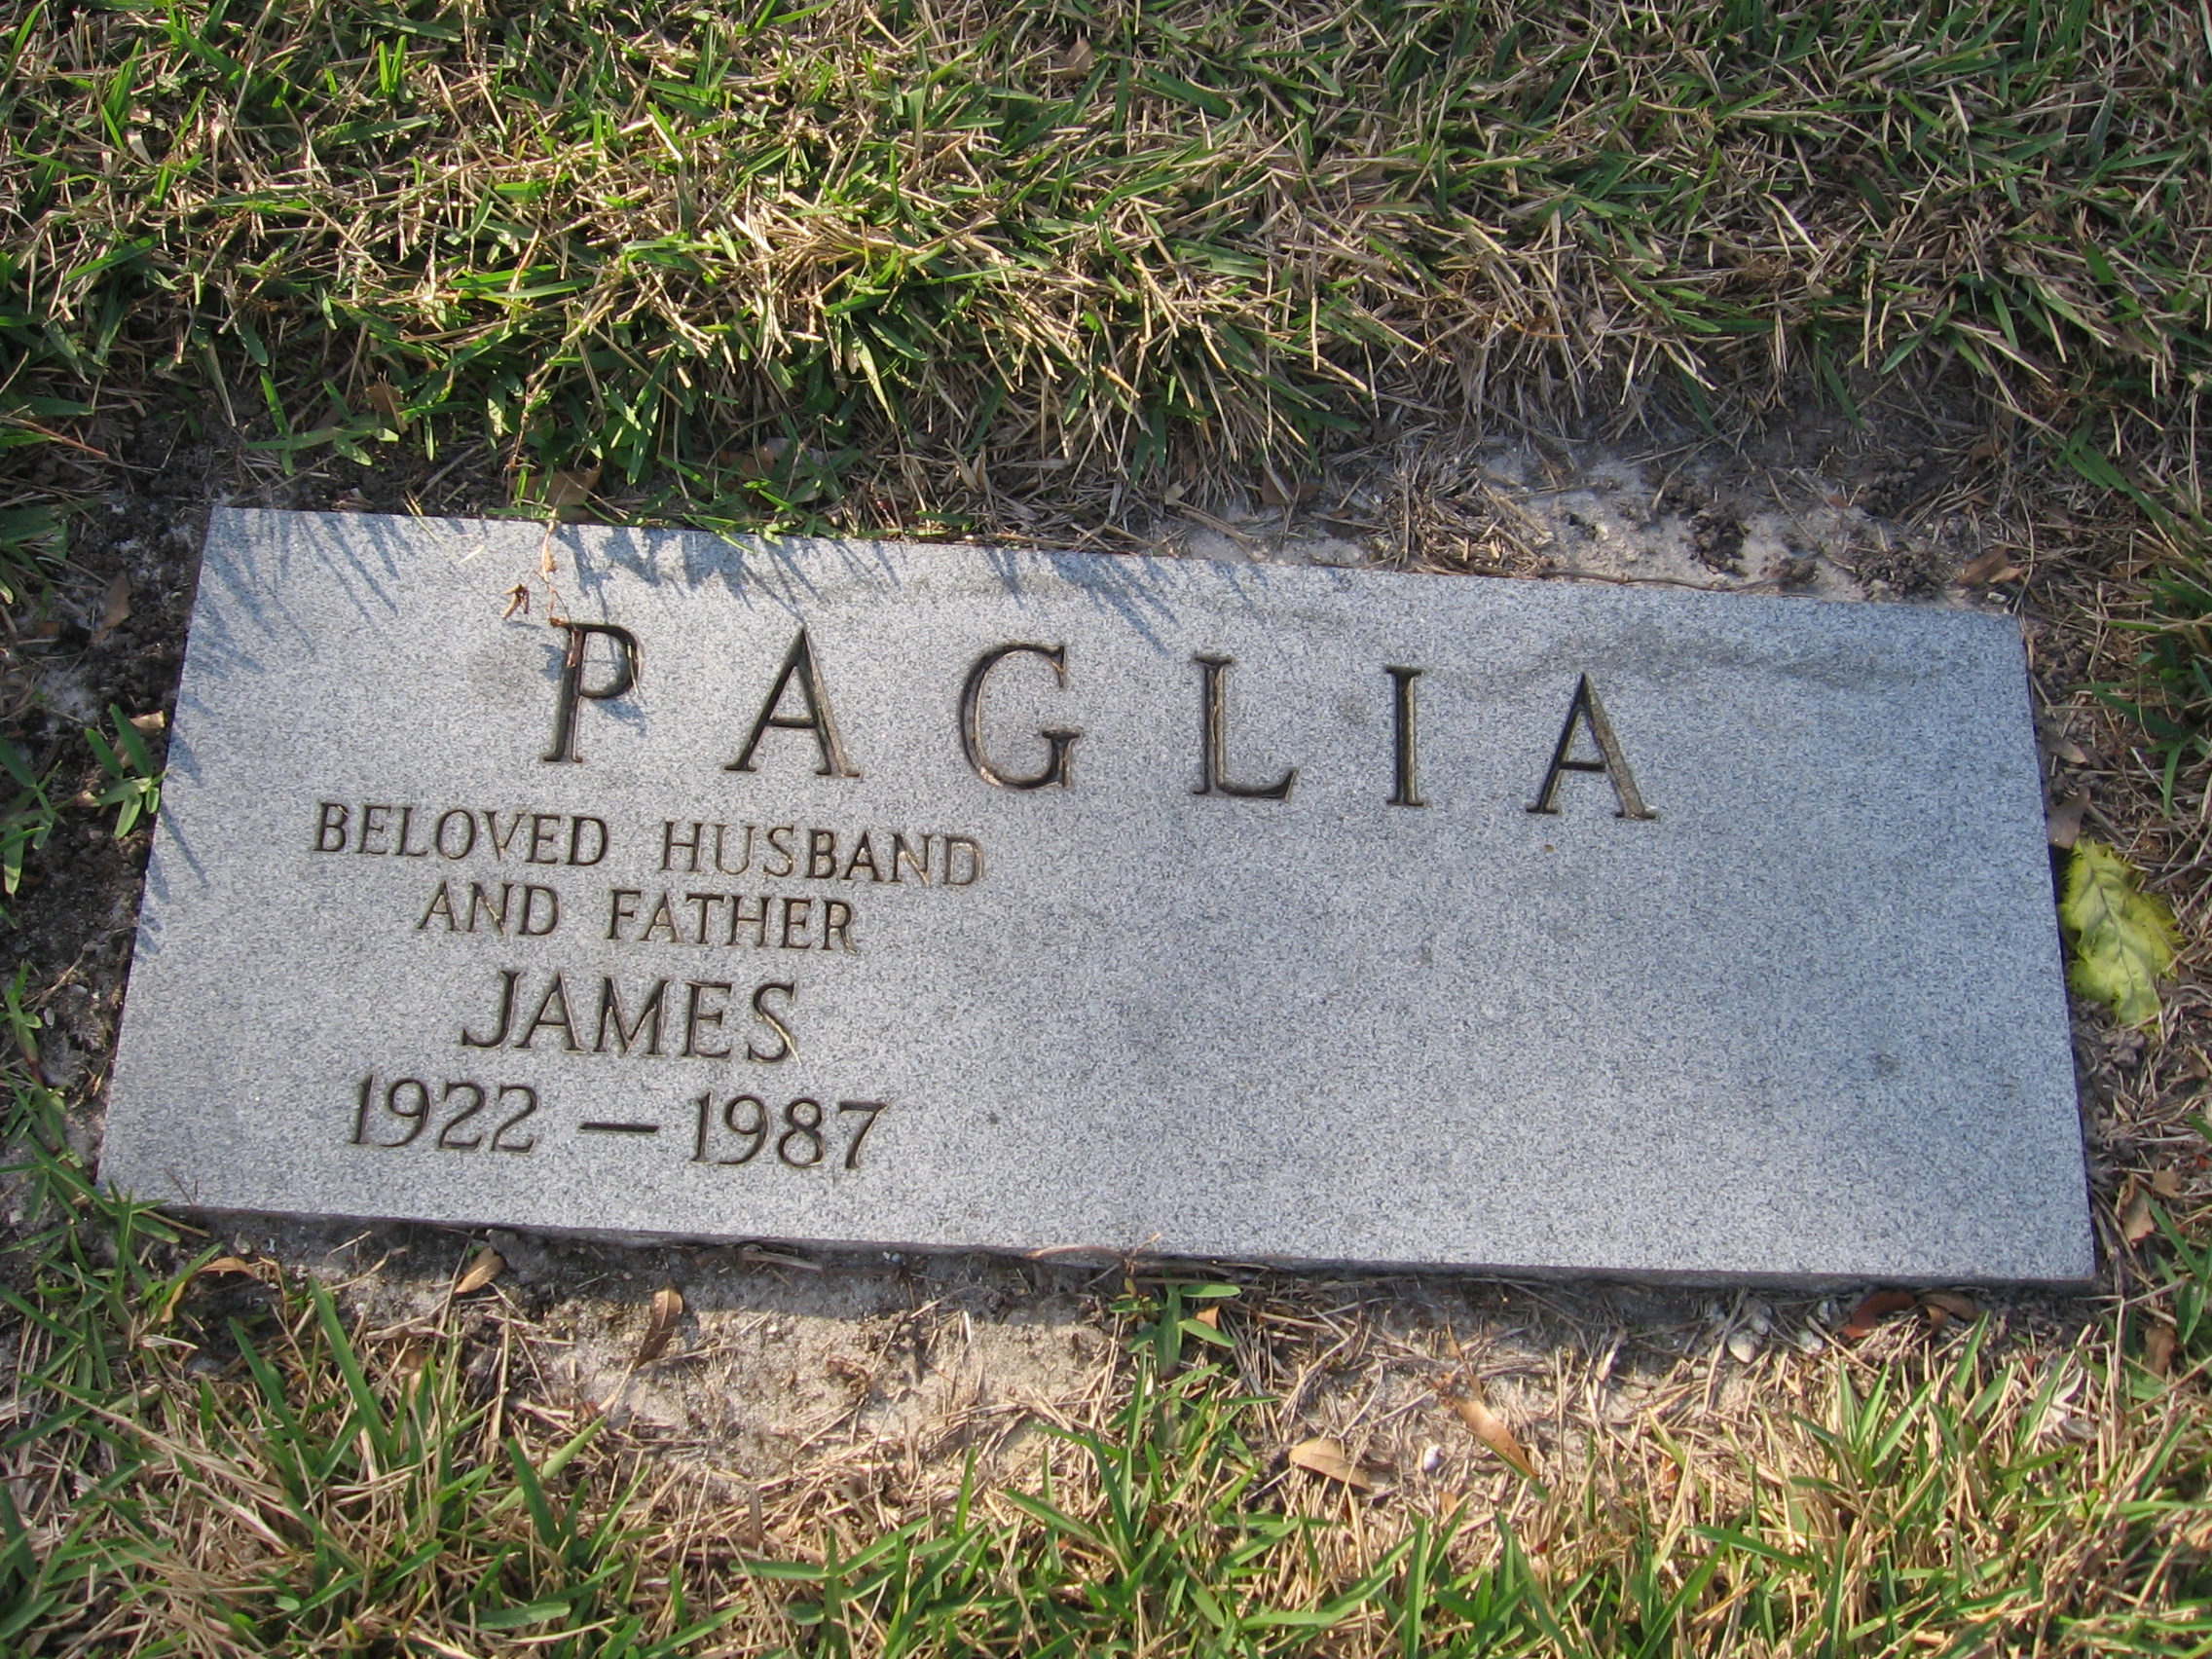 James Paglia